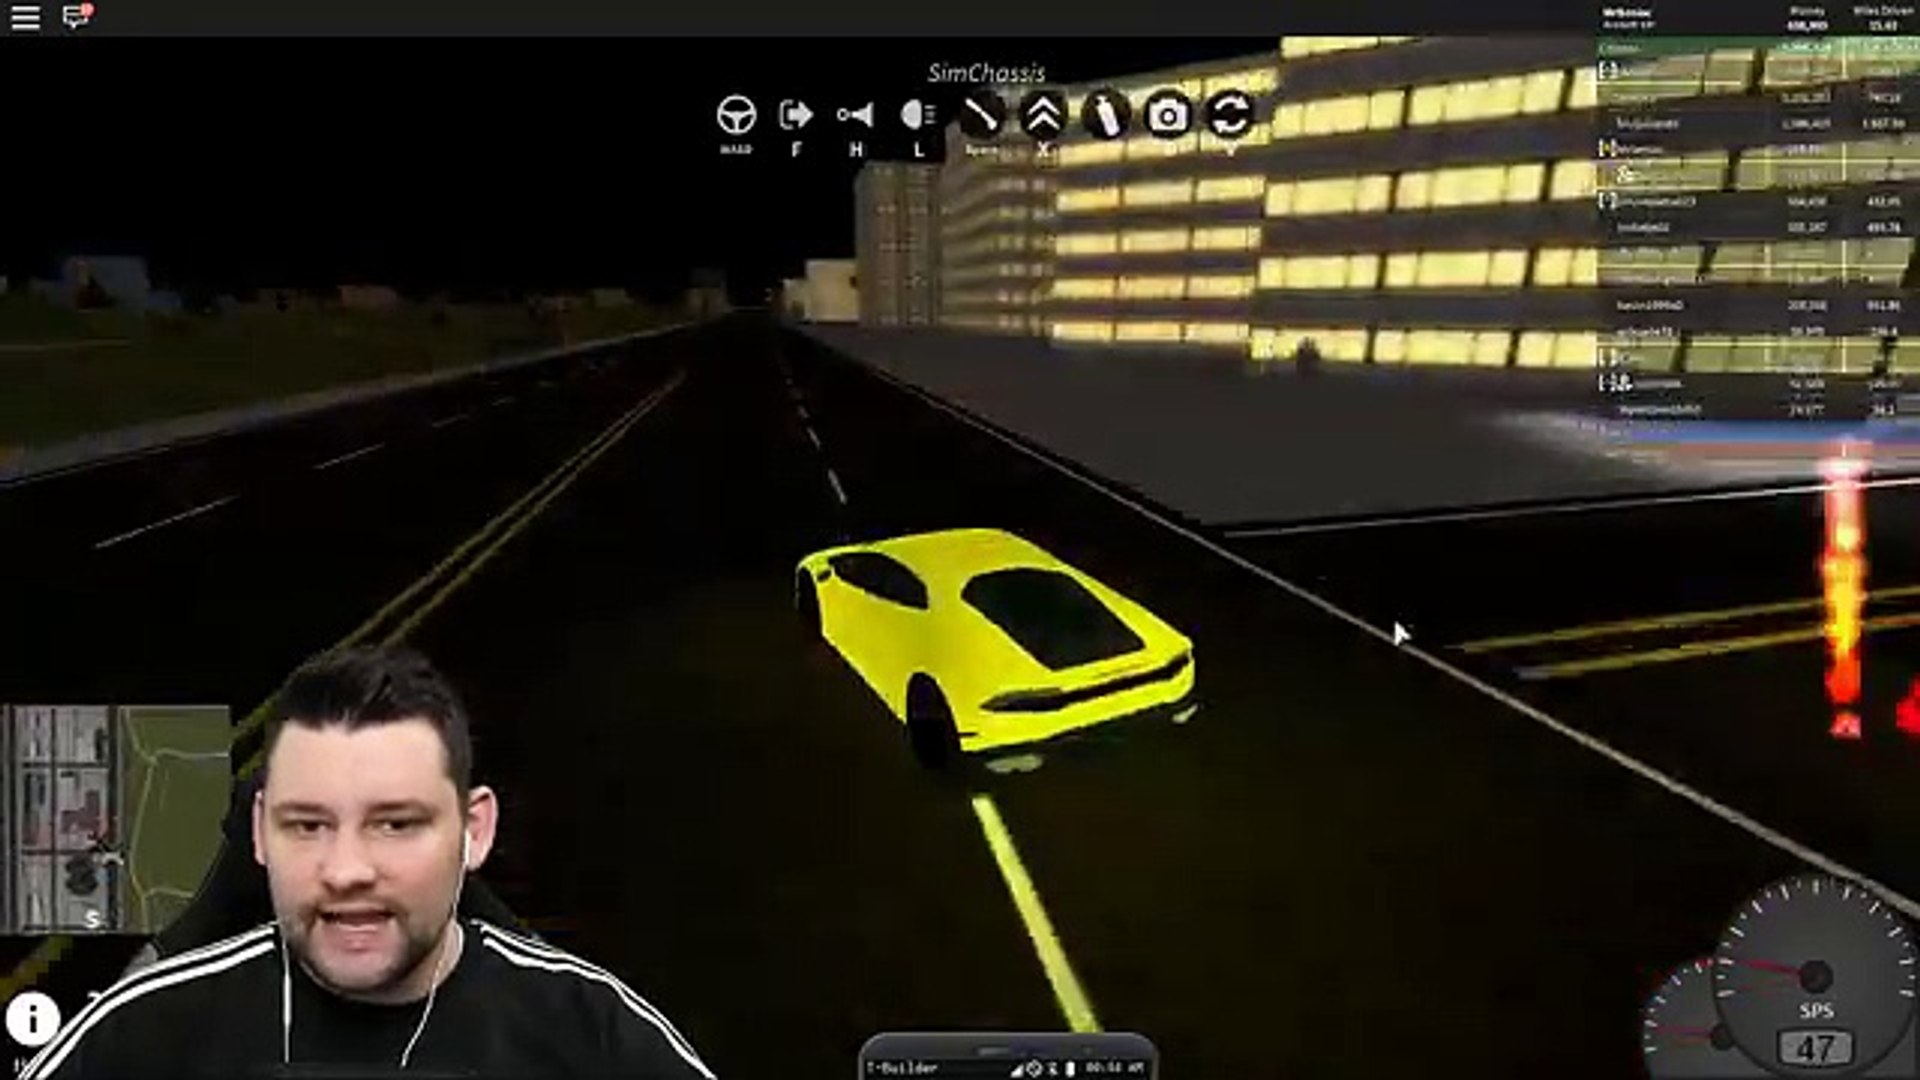 500 Mph Lamborghini Roblox Vehicle Simulator 2 影片dailymotion - roblox vehicle simulator lamborghini aventador